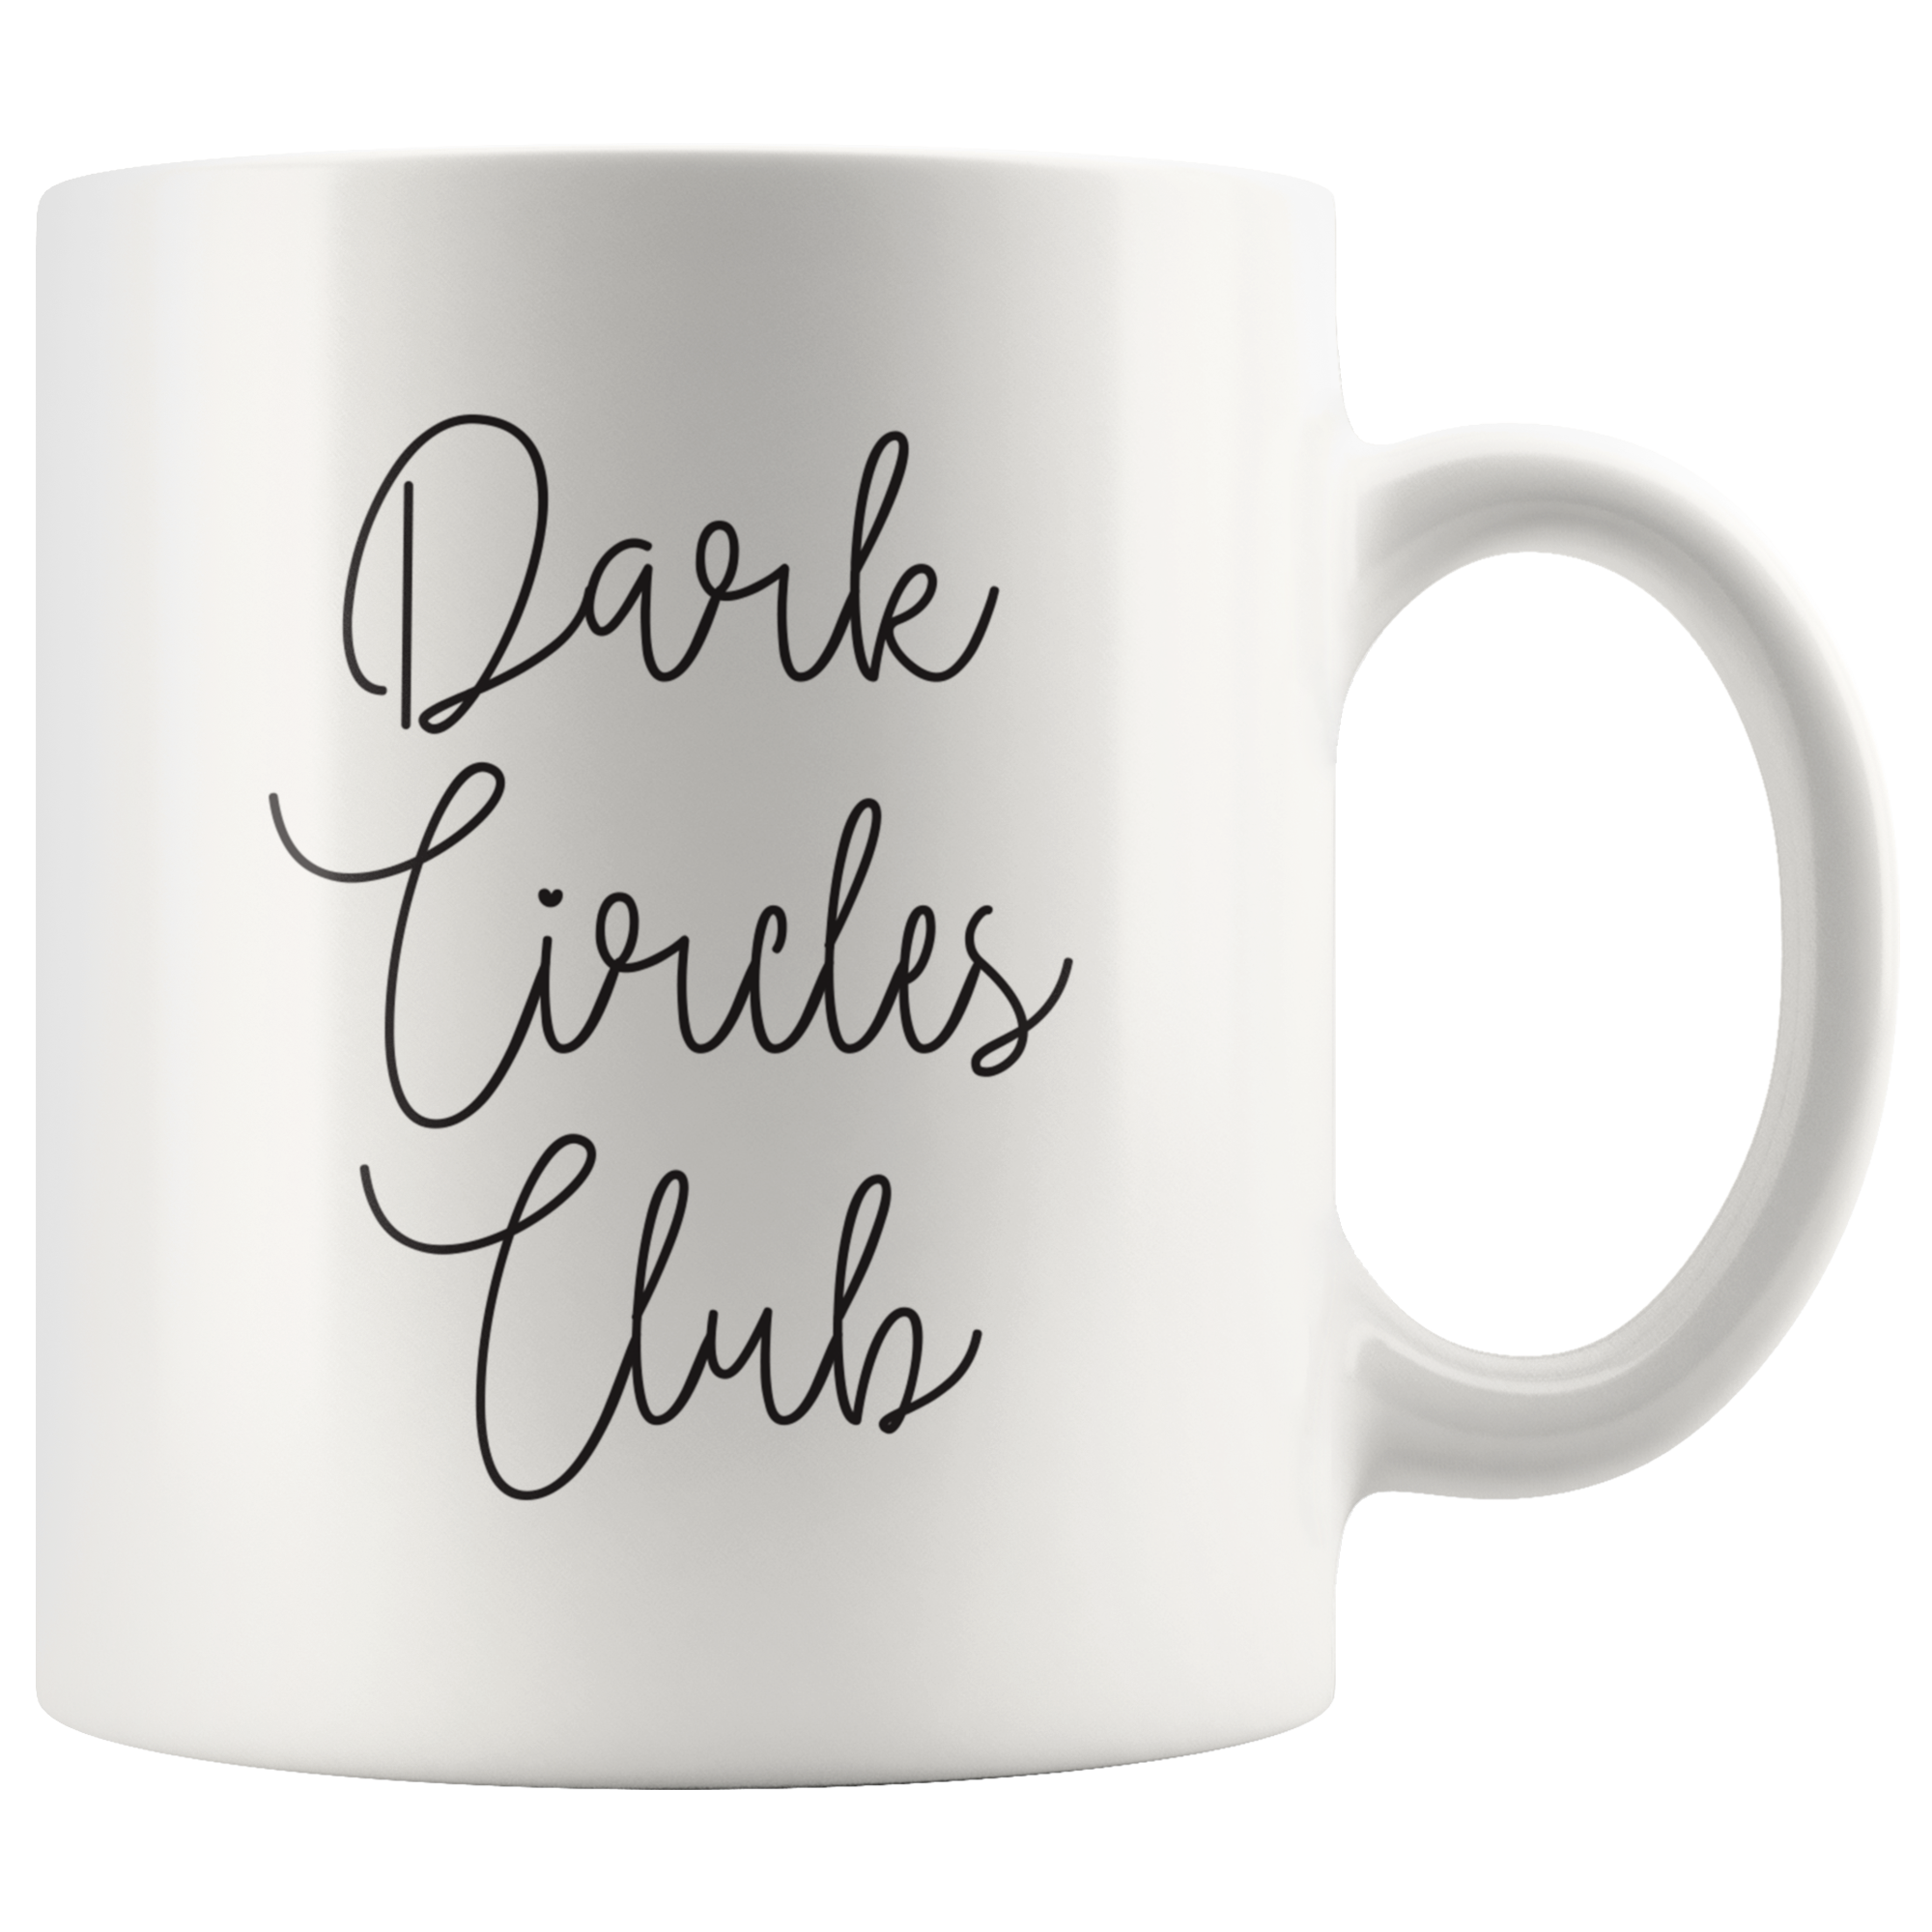 Dark Circles Club Coffee Mug